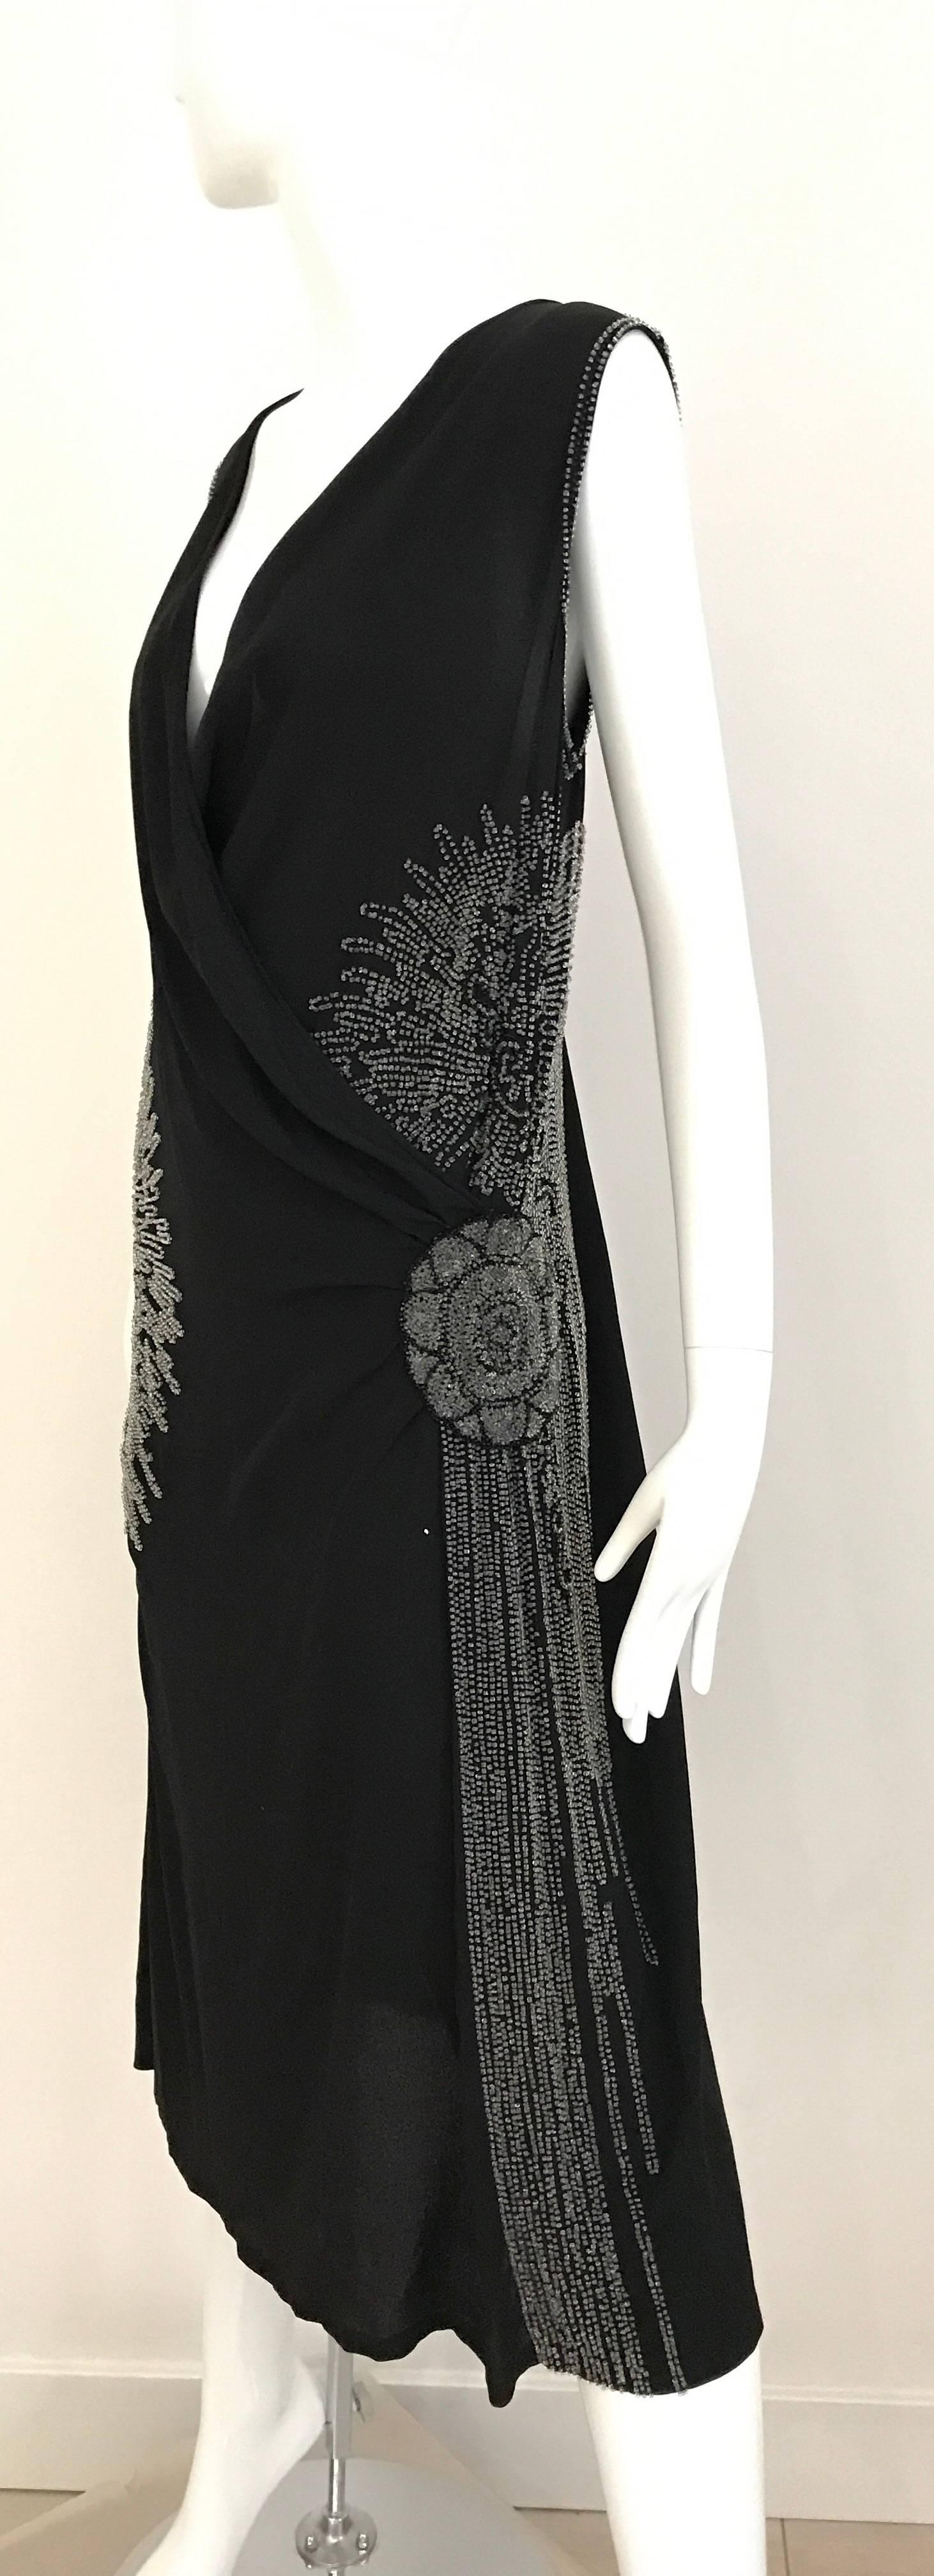 Wunderschönes ärmelloses Flapper-Kleid aus schwarzer Seide mit V-Ausschnitt in großen Größen aus den 1920er Jahren, mit klaren Perlen in floralem Muster. Passform US-Größe 6/8
Büste : 40 Zoll
Taille: 34 Zoll
Hüfte: 42 Zoll
Länge 44 Zoll
